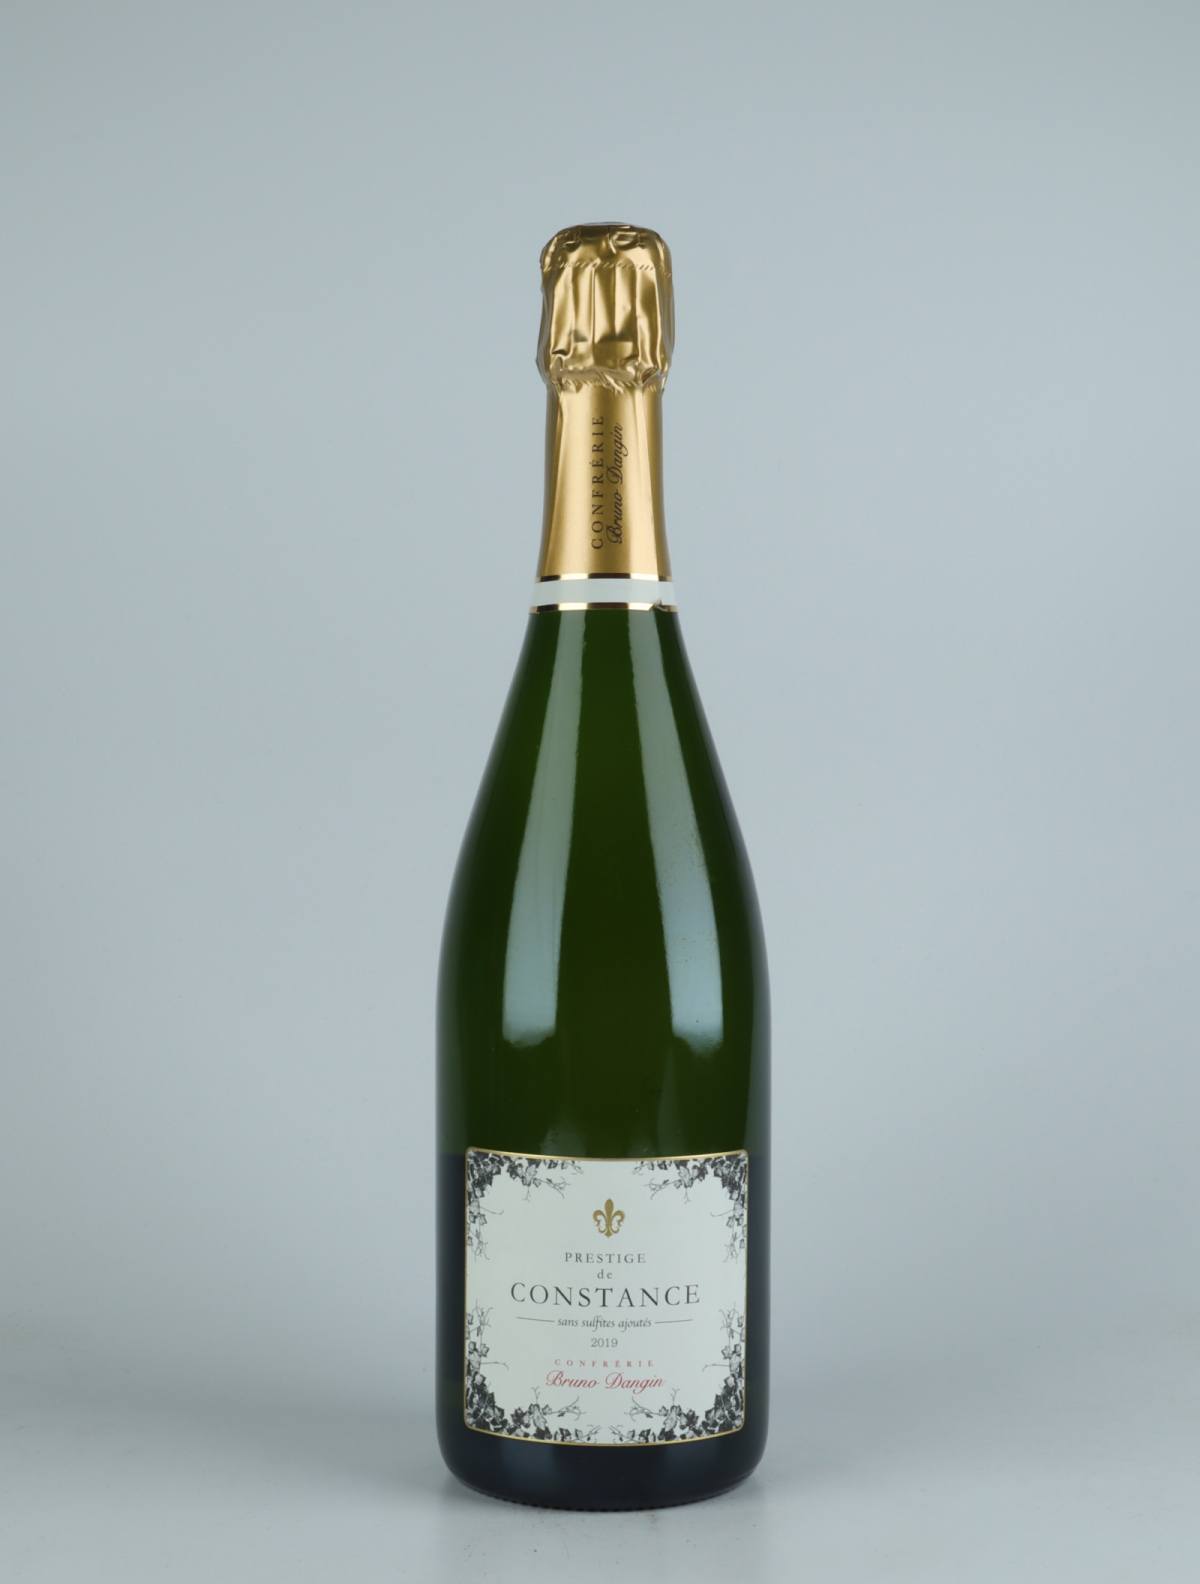 A bottle 2019 Crémant Extra Brut - Prestige de Constance Sparkling from Domaine Bruno Dangin, Burgundy in France